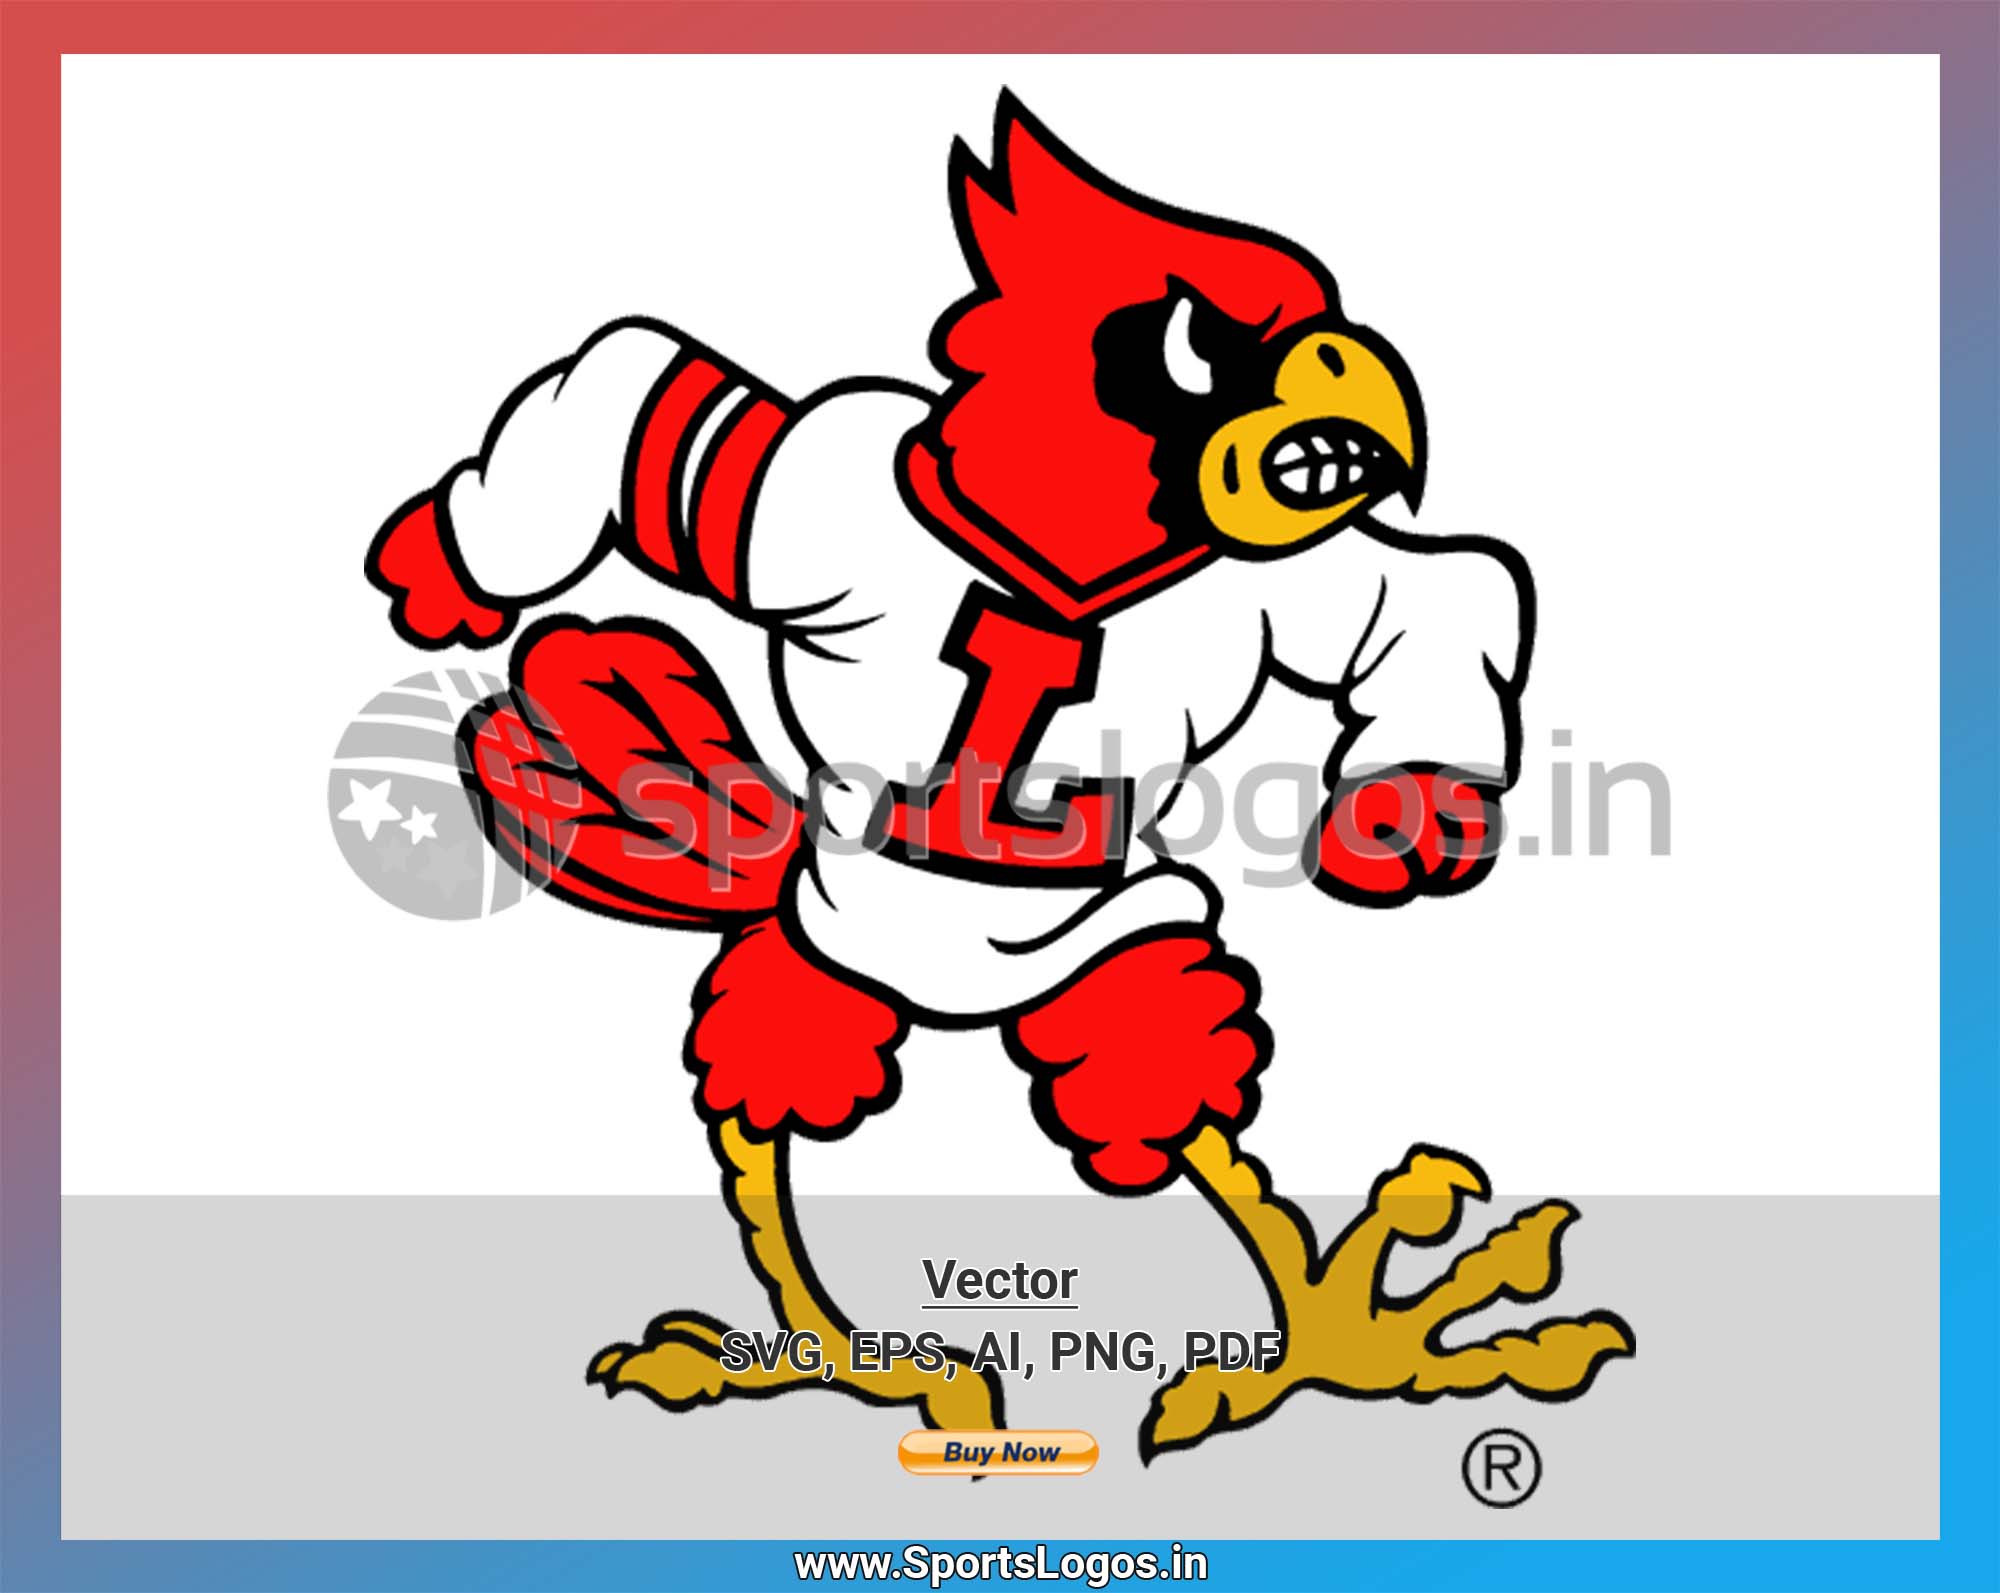 Men's Cutter & Buck Gray Louisville Cardinals Alumni Logo Charter